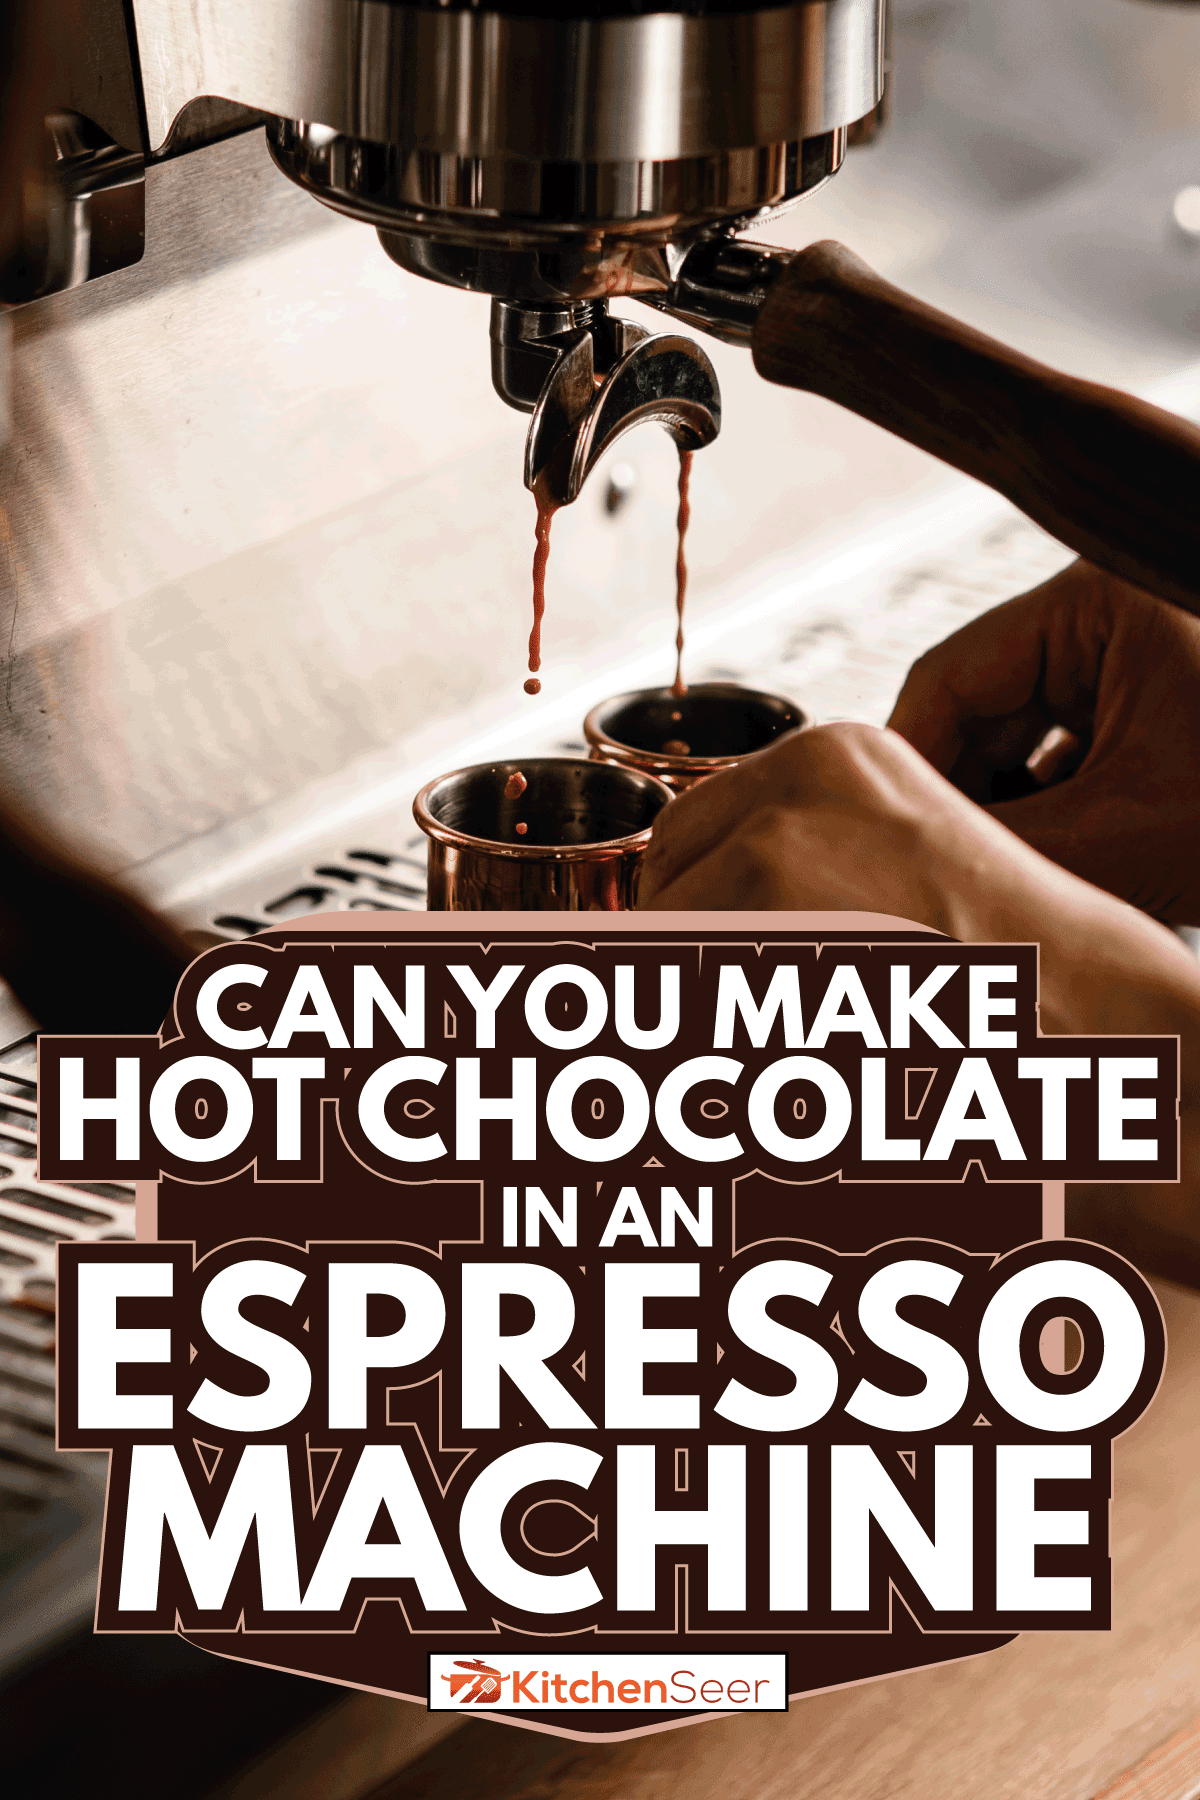 咖啡机投入咖啡杯。咖啡师准备deliciouse新鲜的热咖啡。你能让热巧克力在一个咖啡机吗”width=